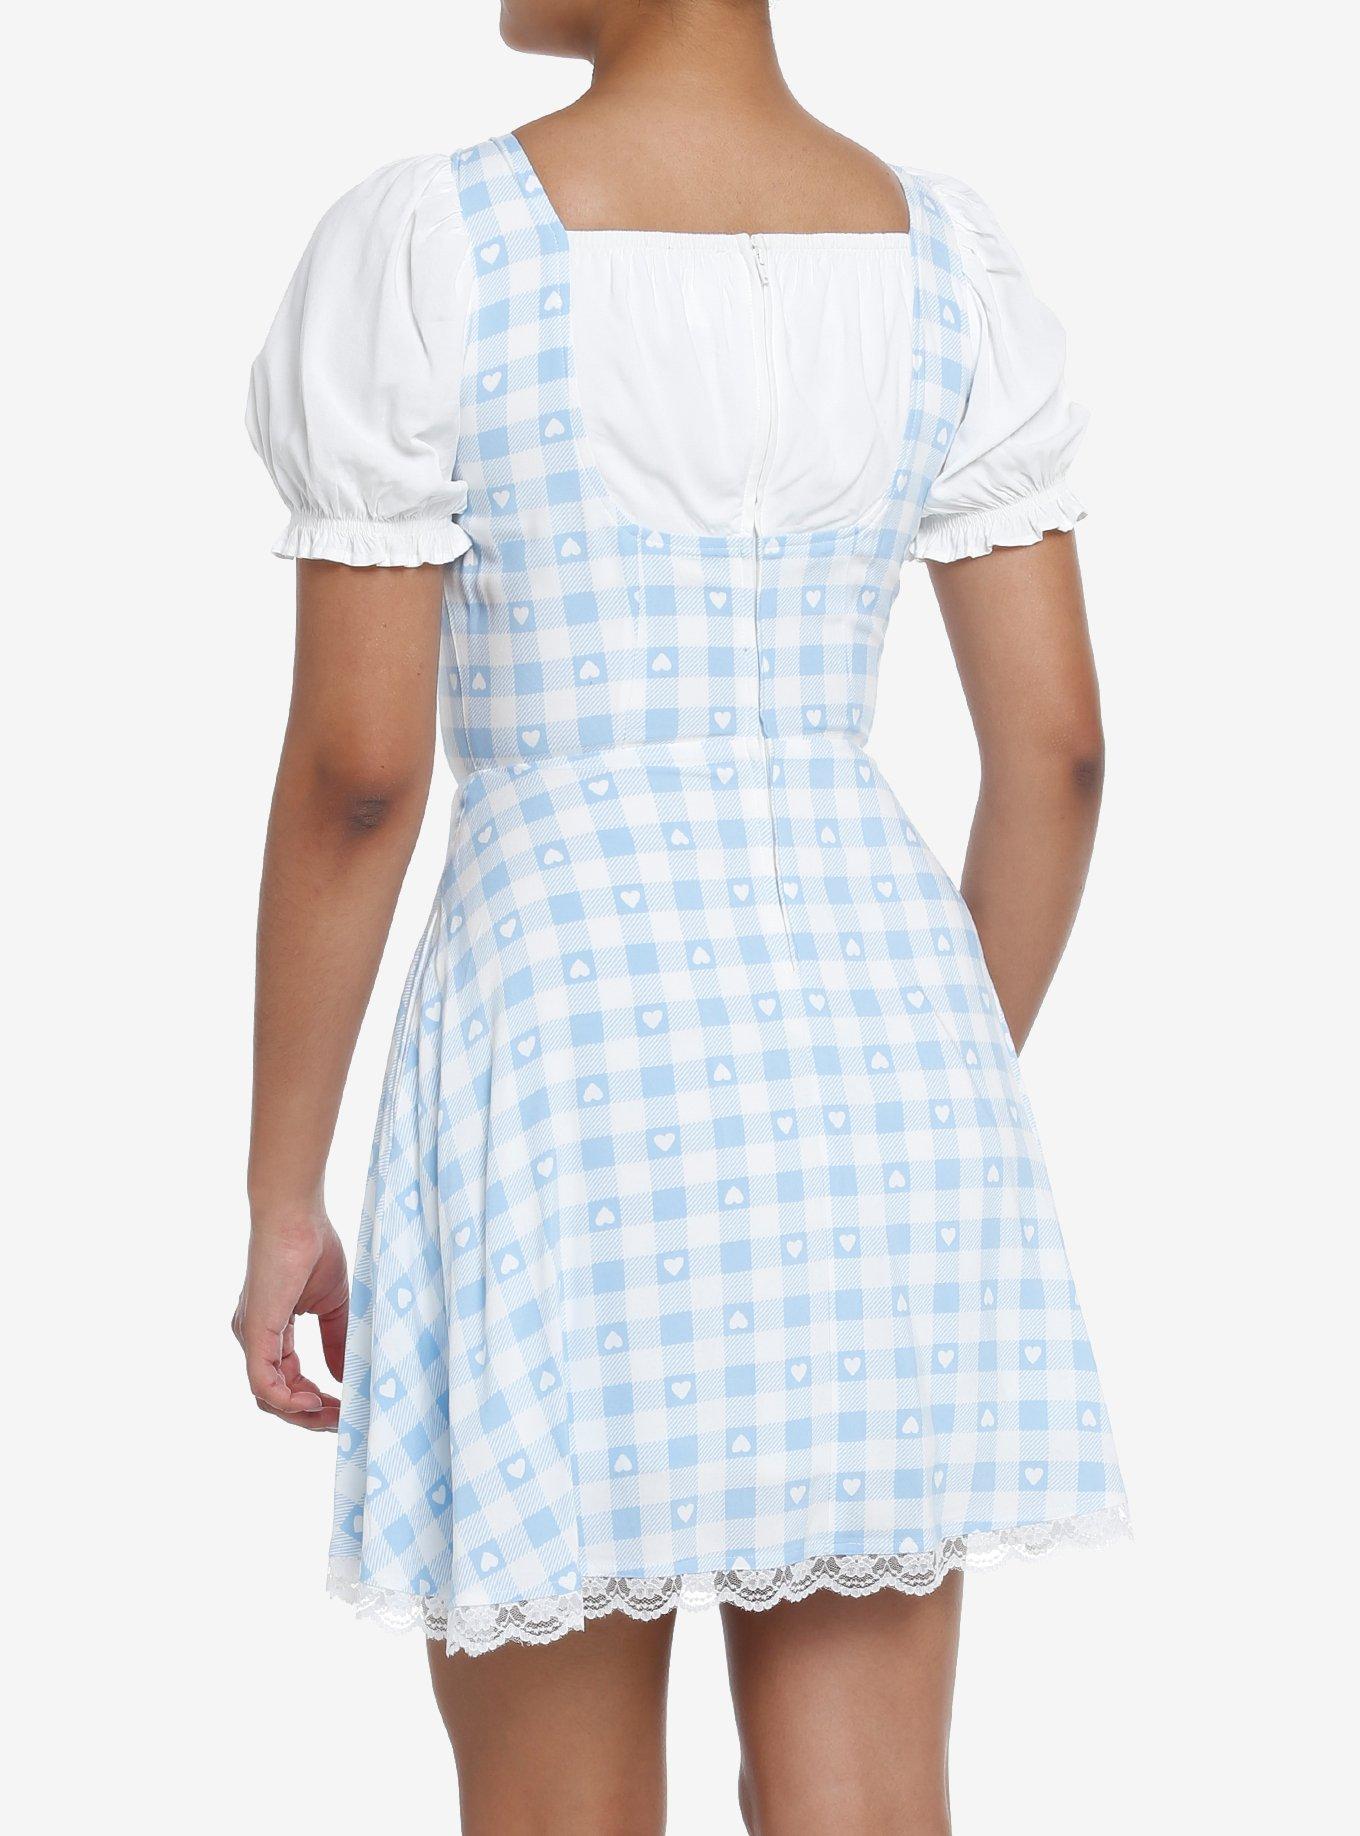 Sweet Society Blue & White Gingham Corset Dress, GINGHAM CHECK, alternate